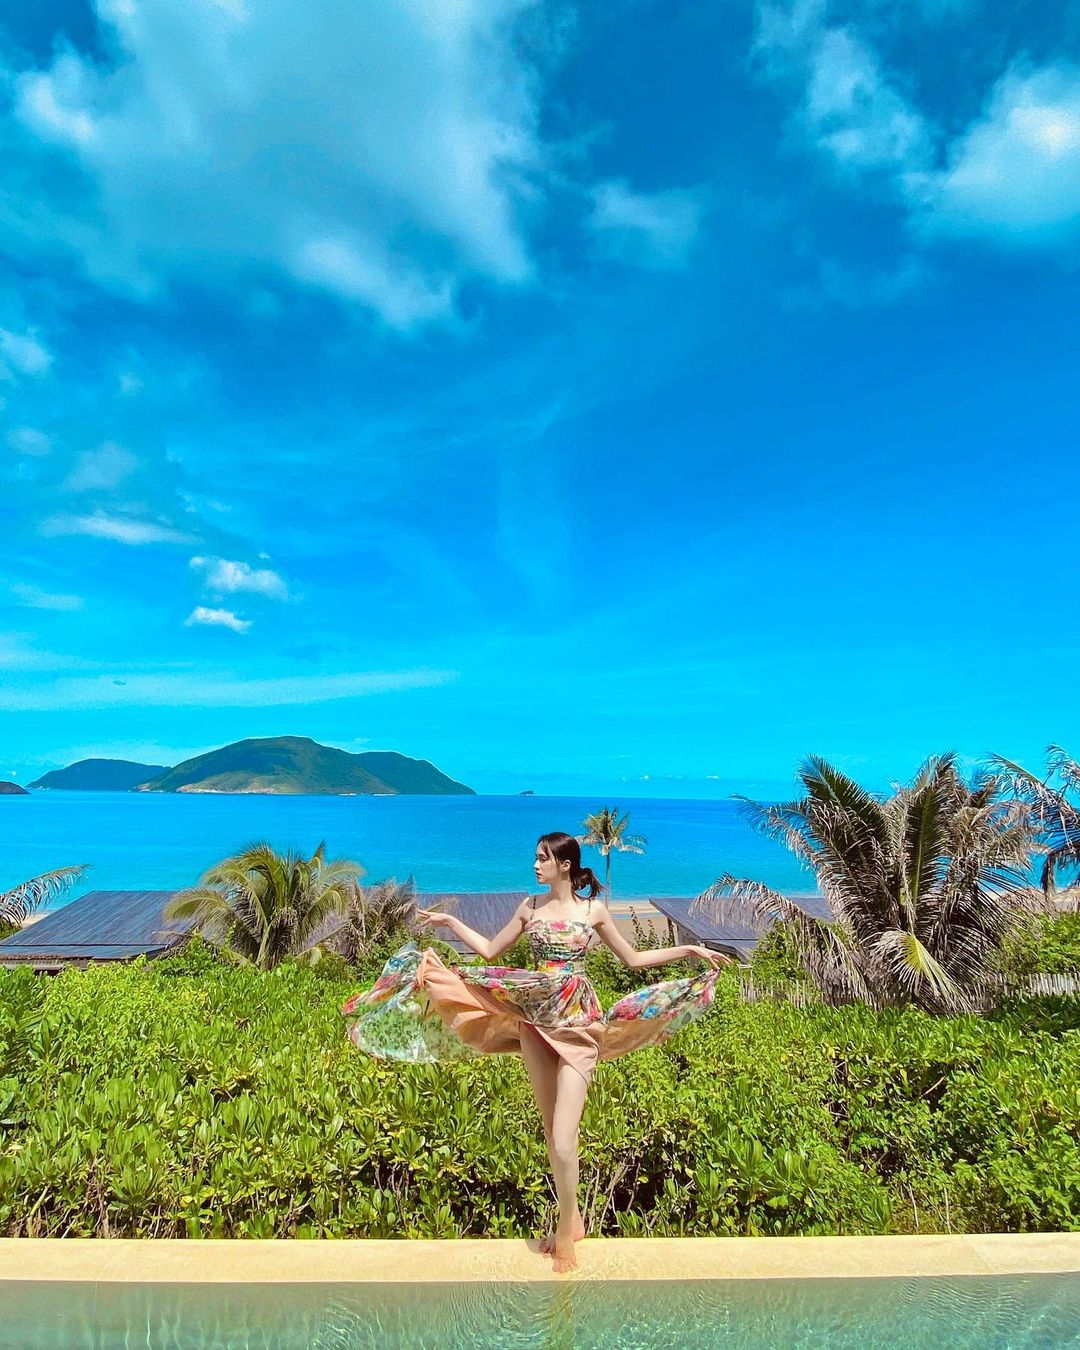 3 "thiên đường" nghỉ dưỡng ở Côn Đảo cho chuyến du lịch tuyệt vời - 1